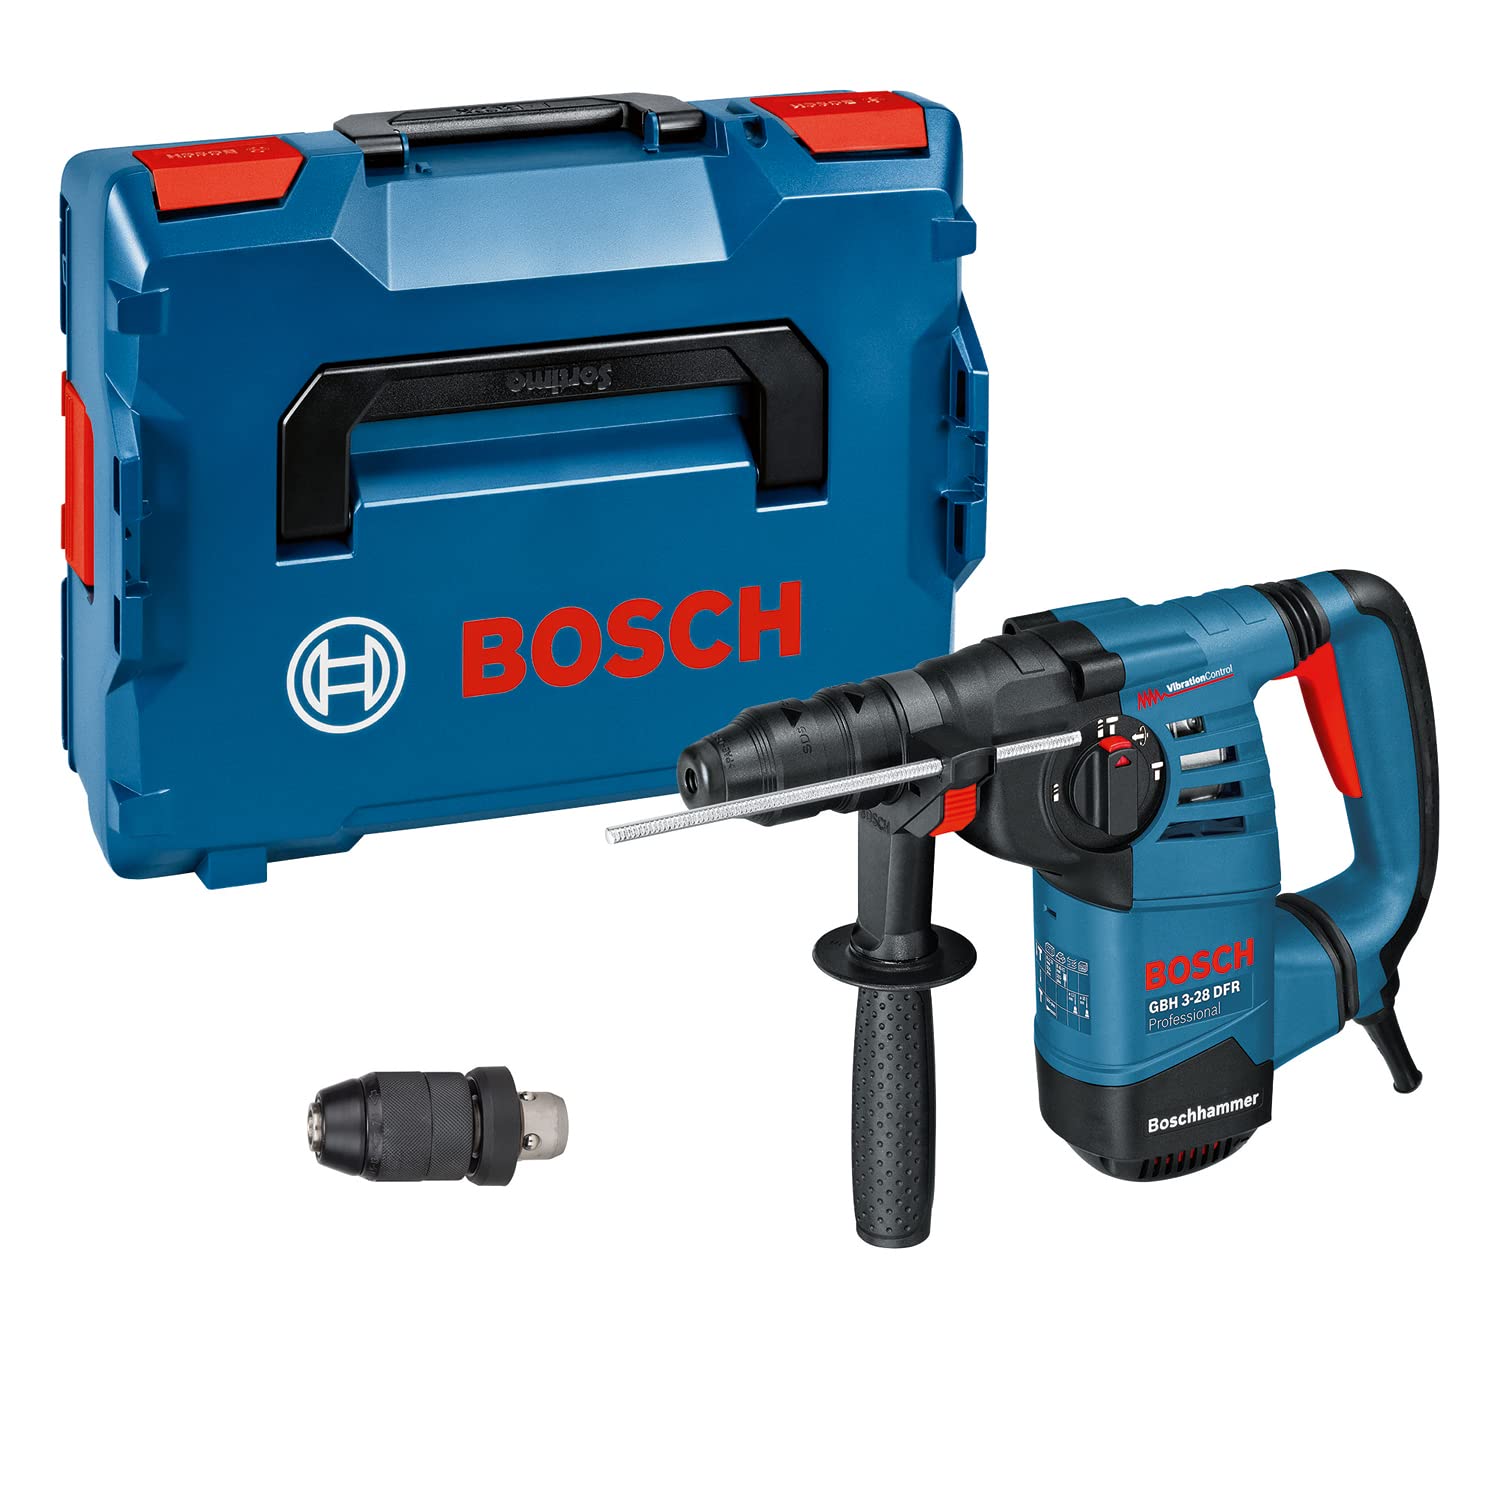 Bosch Professional Bohrhammer GBH 3-28 DRE (inkl. Tiefenanschlag 210 mm, Maschinentuch, Schnellwechselbohrfutter 13mm, Wechselfutter SDS plus, Zusatzhandgriff, Fettube, L-BOXX 136)